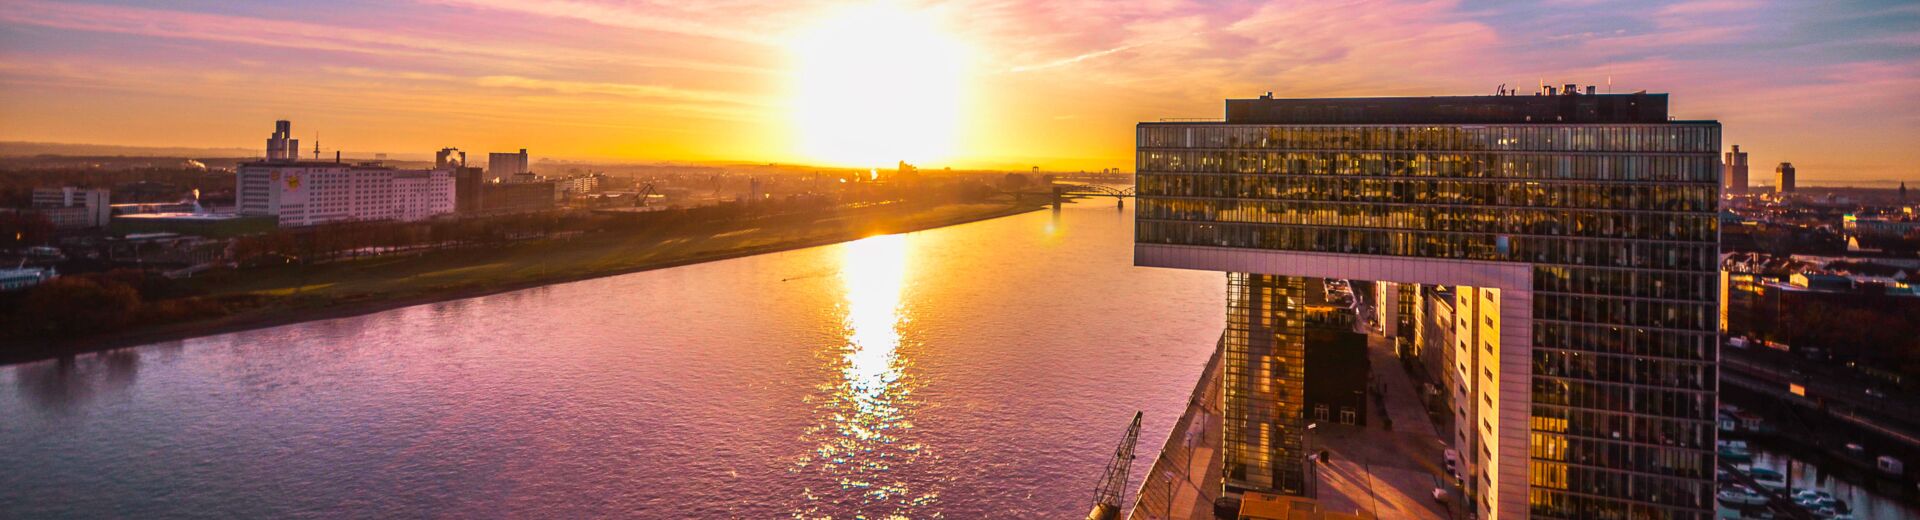 Kranhäuser Köln bei Sonnenuntergang